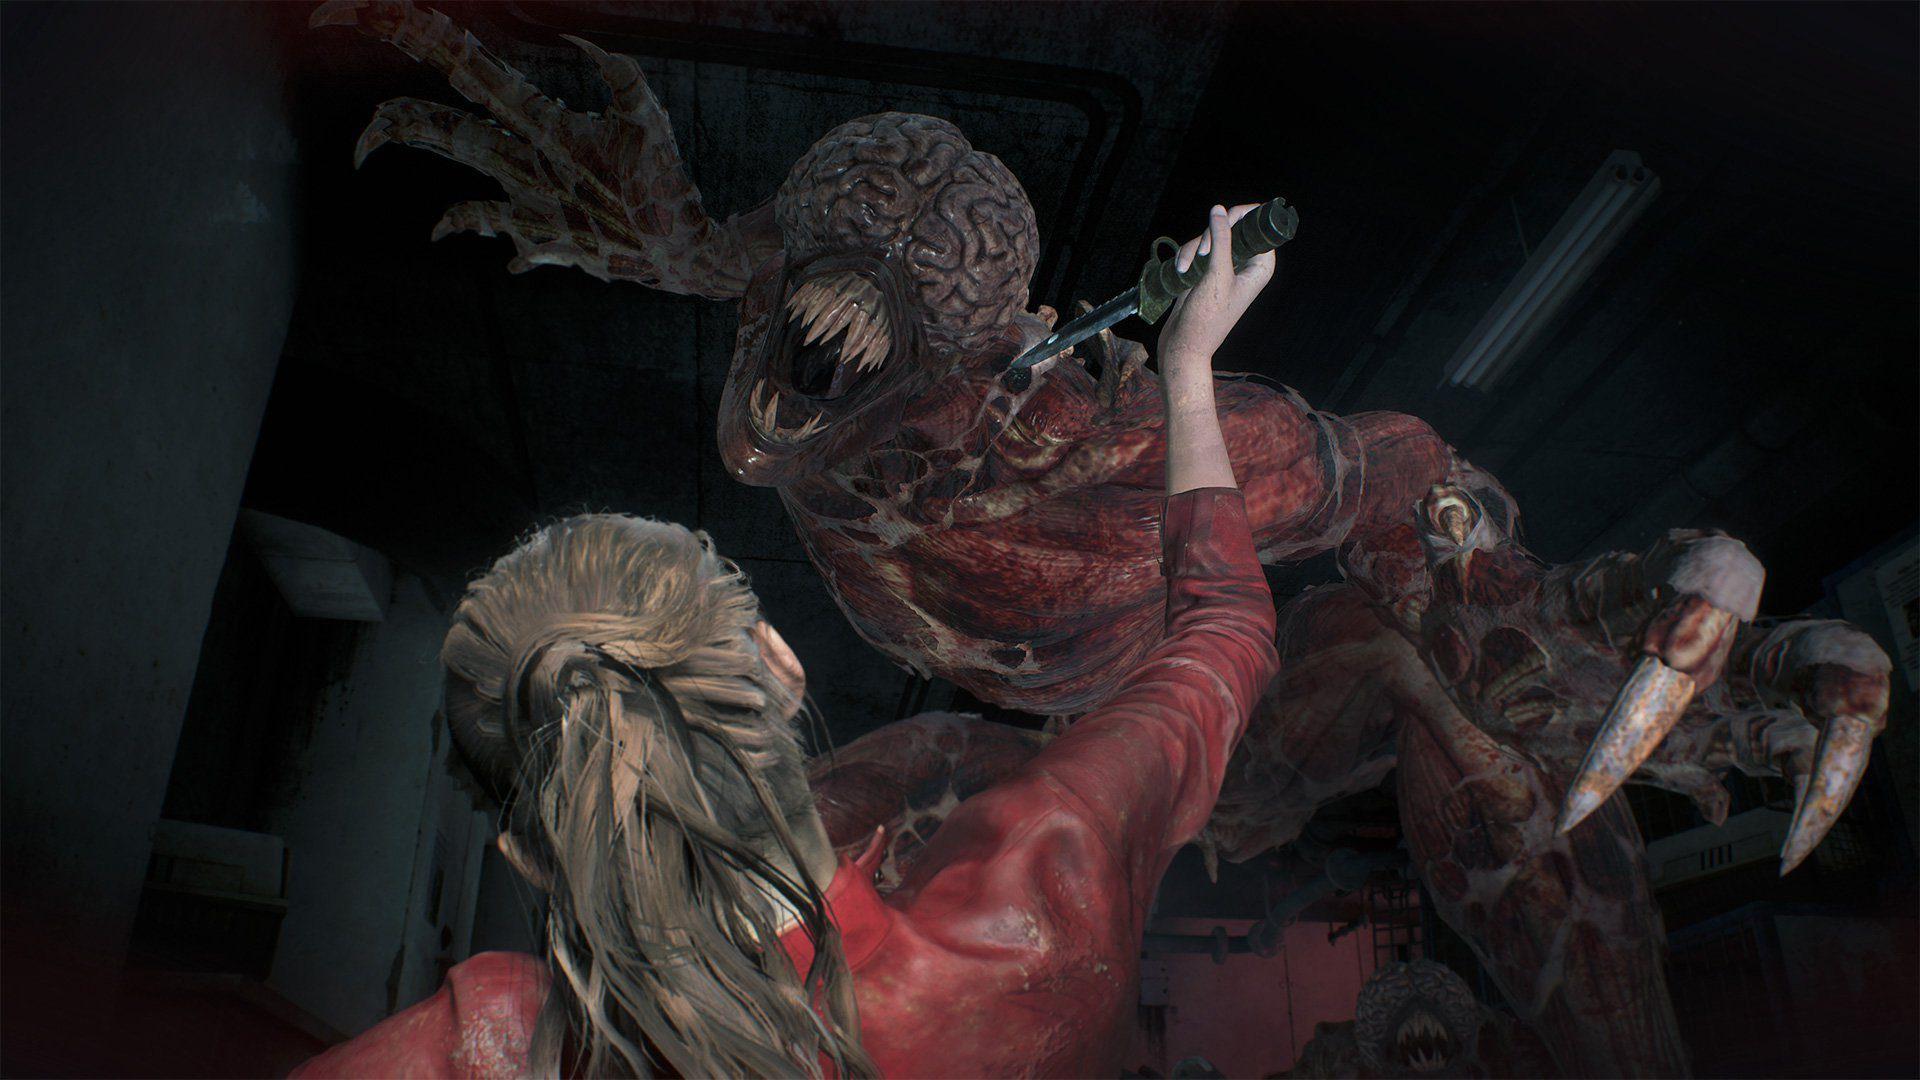 Resident Evil 2 Remake Wallpaper in Ultra HDK